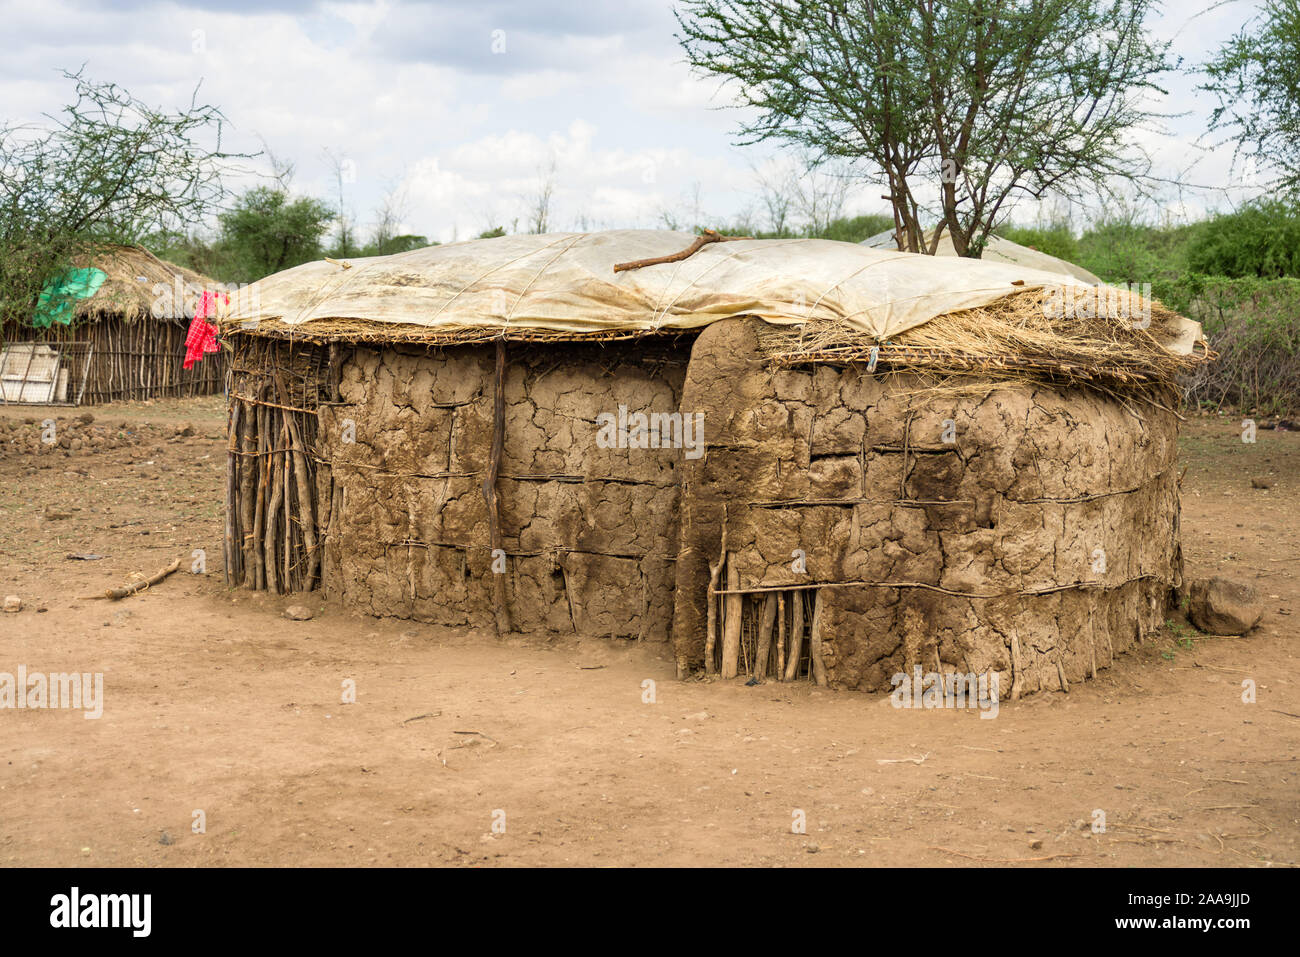 Un traditionnel Masai Masai ou cabane de torchis, faites de branches, de bouse de vache et de boue, au Kenya Banque D'Images